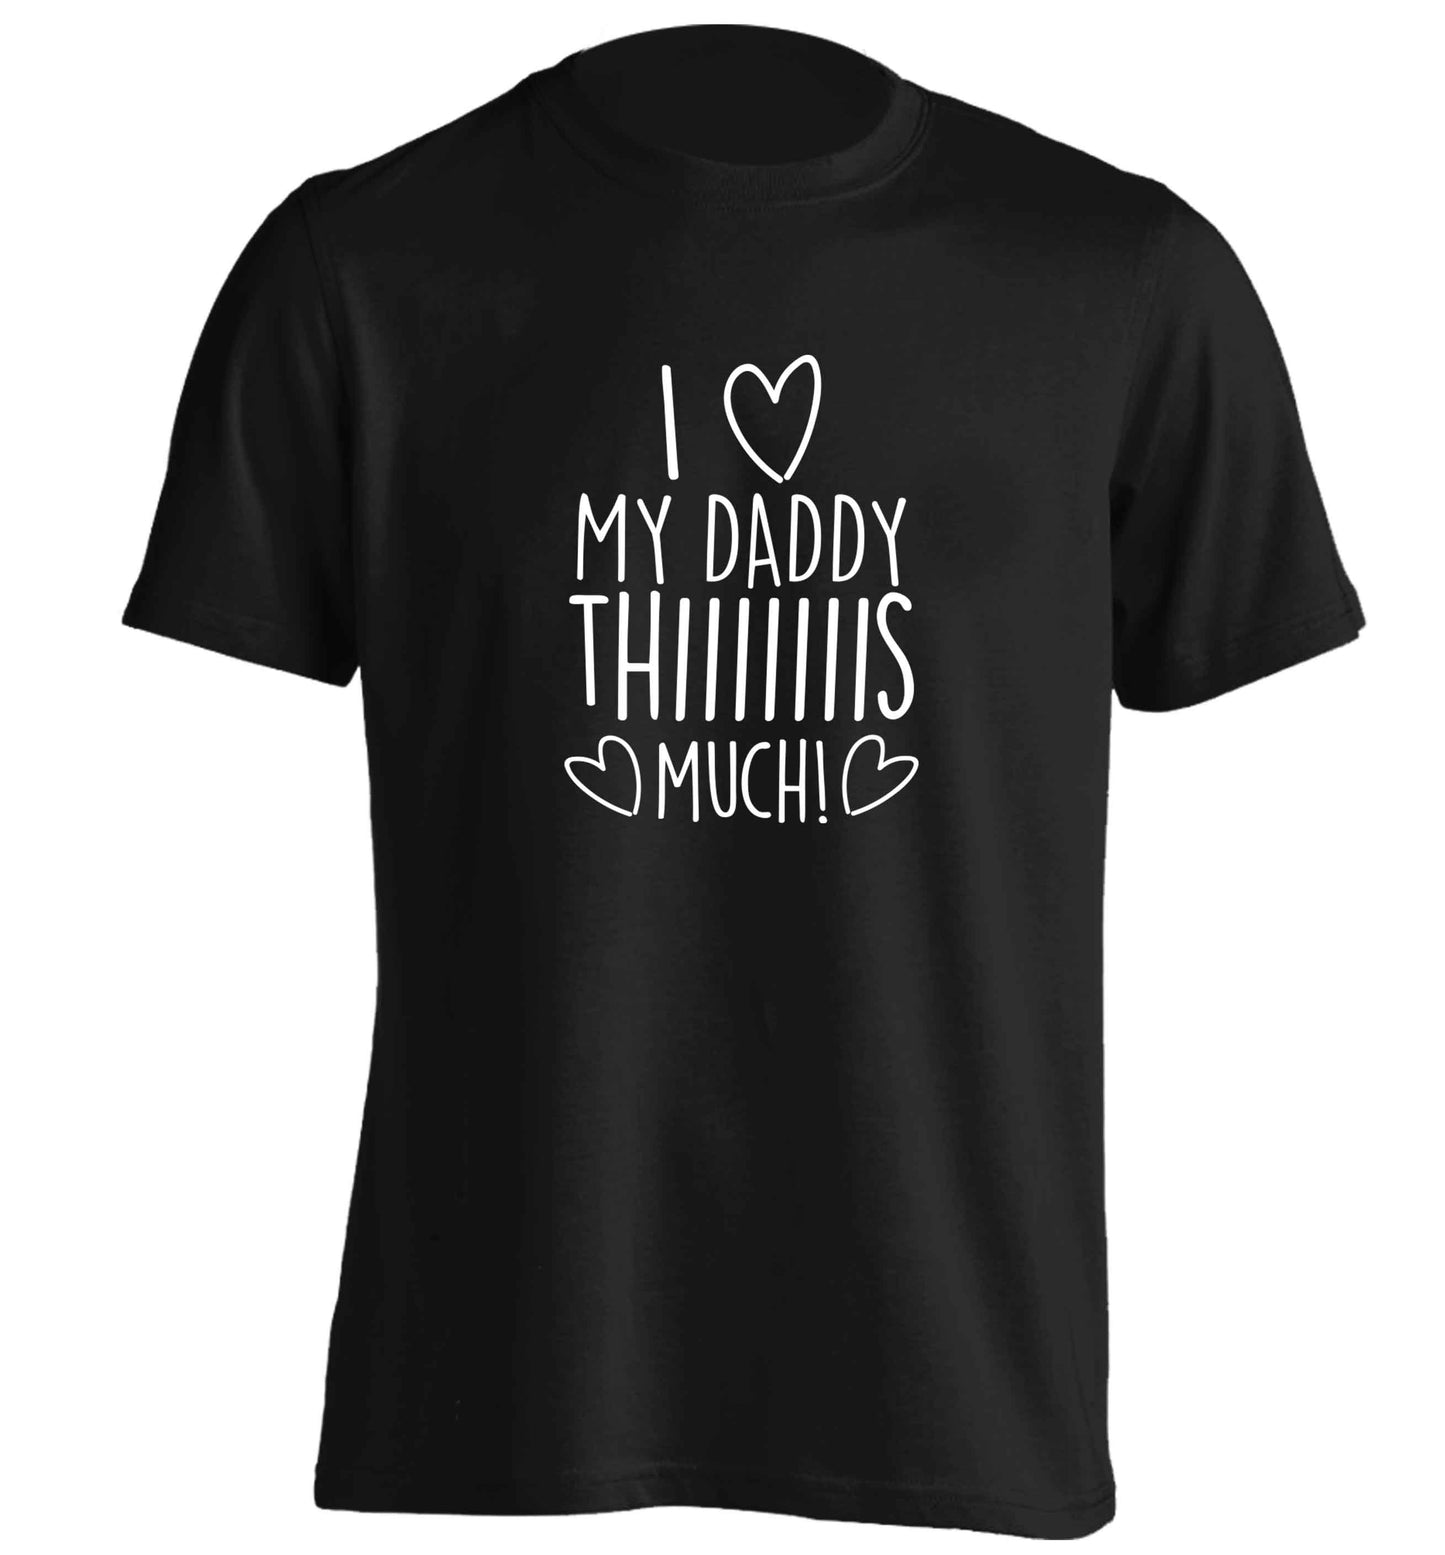 I love my daddy thiiiiis much! adults unisex black Tshirt 2XL